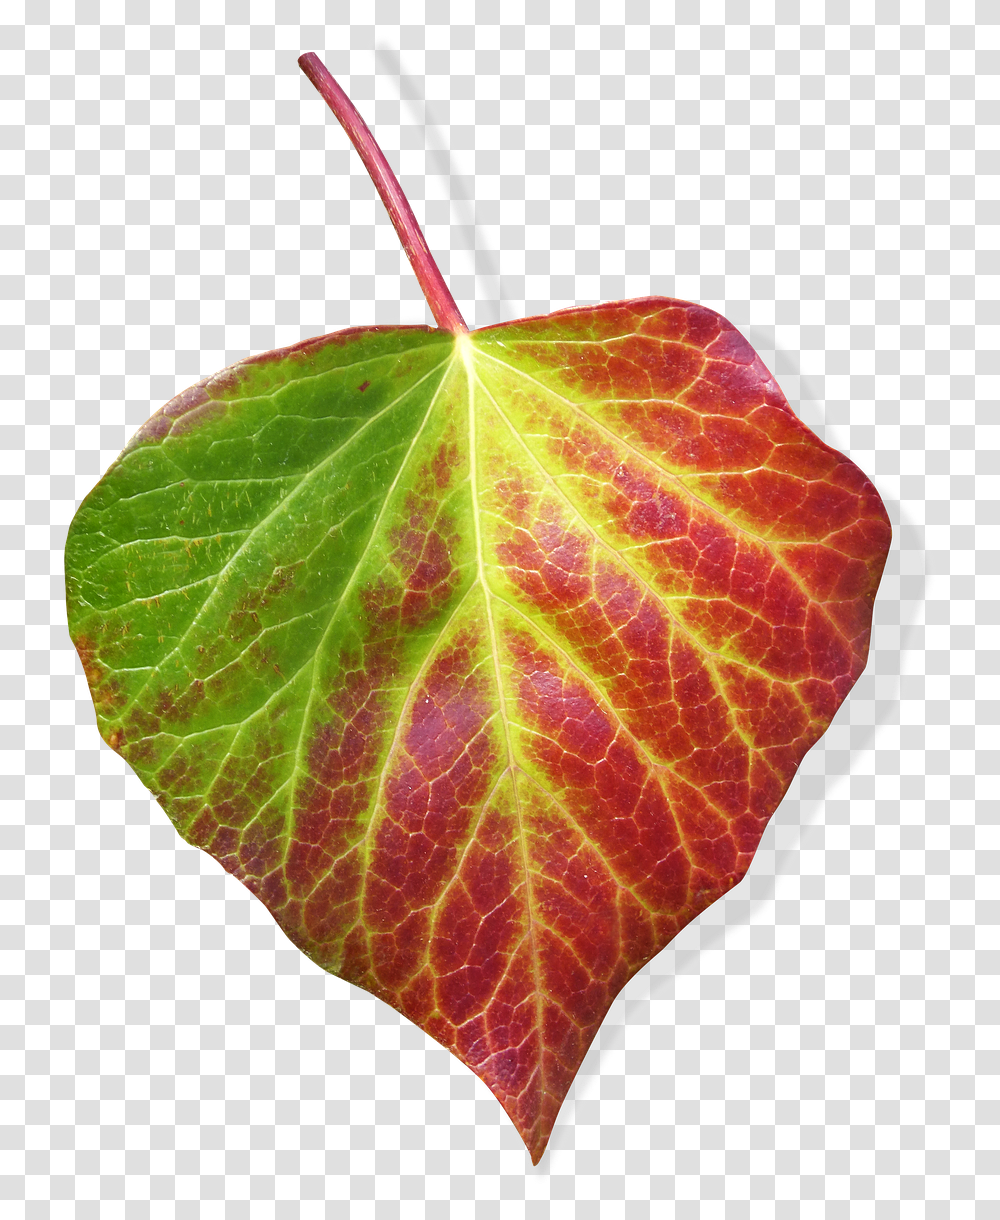 Leaf Ivy Background Green And Red Leaf Leaf, Plant, Veins, Tennis Ball, Sport Transparent Png